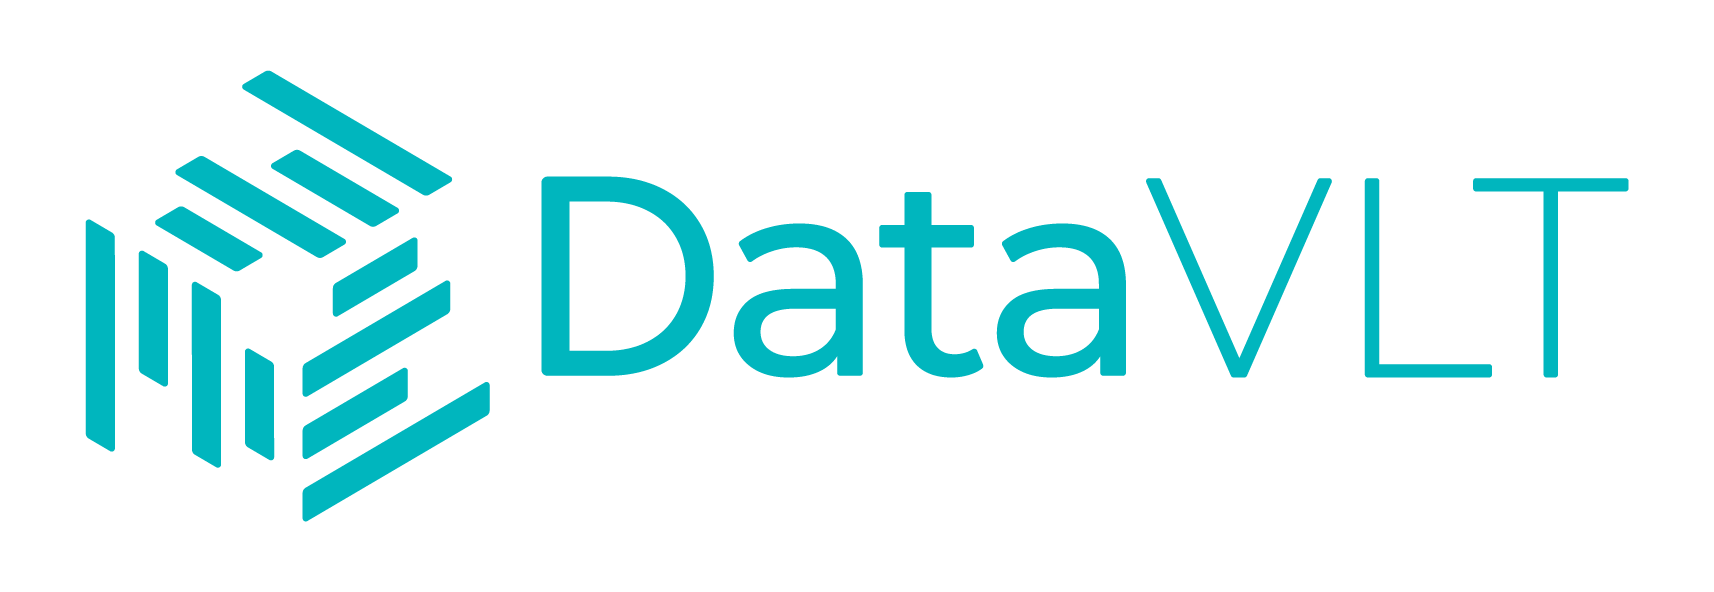 01 DataVLT logo - Turquoise